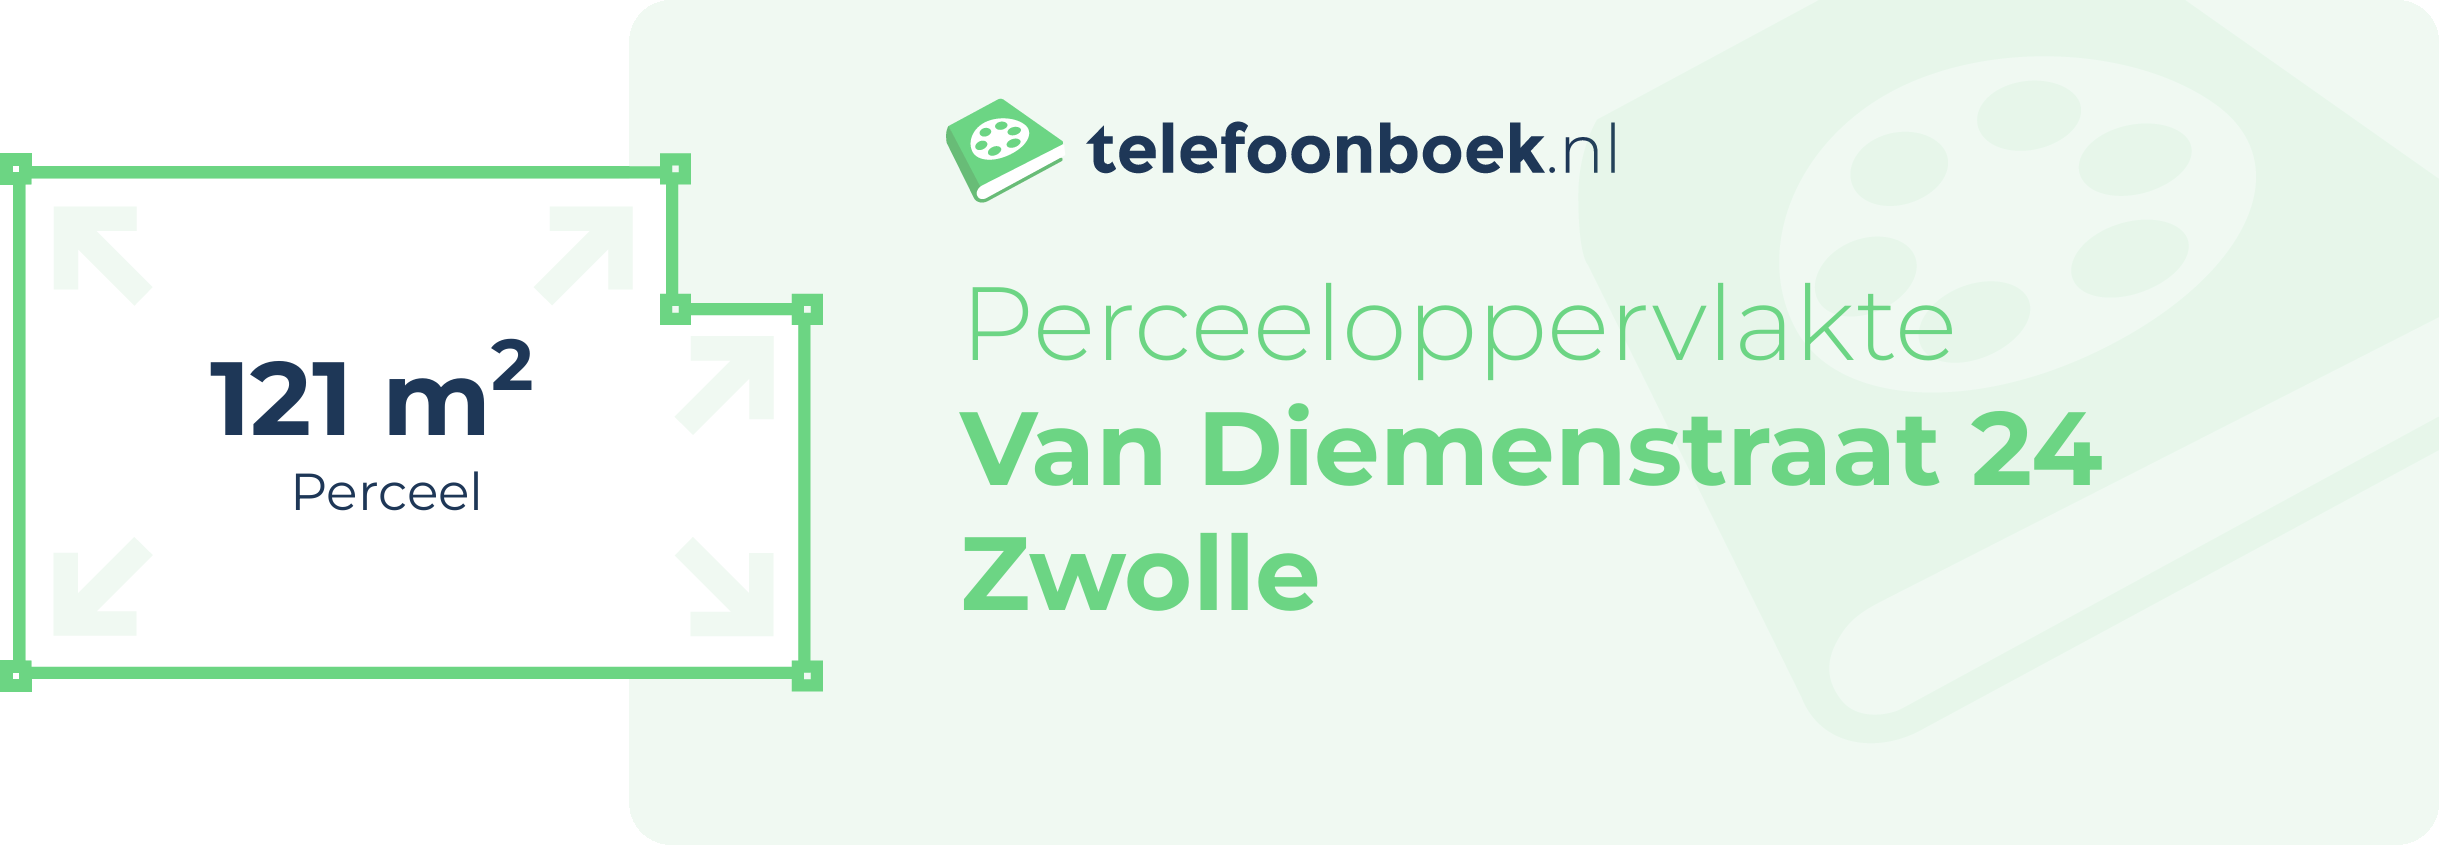 Perceeloppervlakte Van Diemenstraat 24 Zwolle